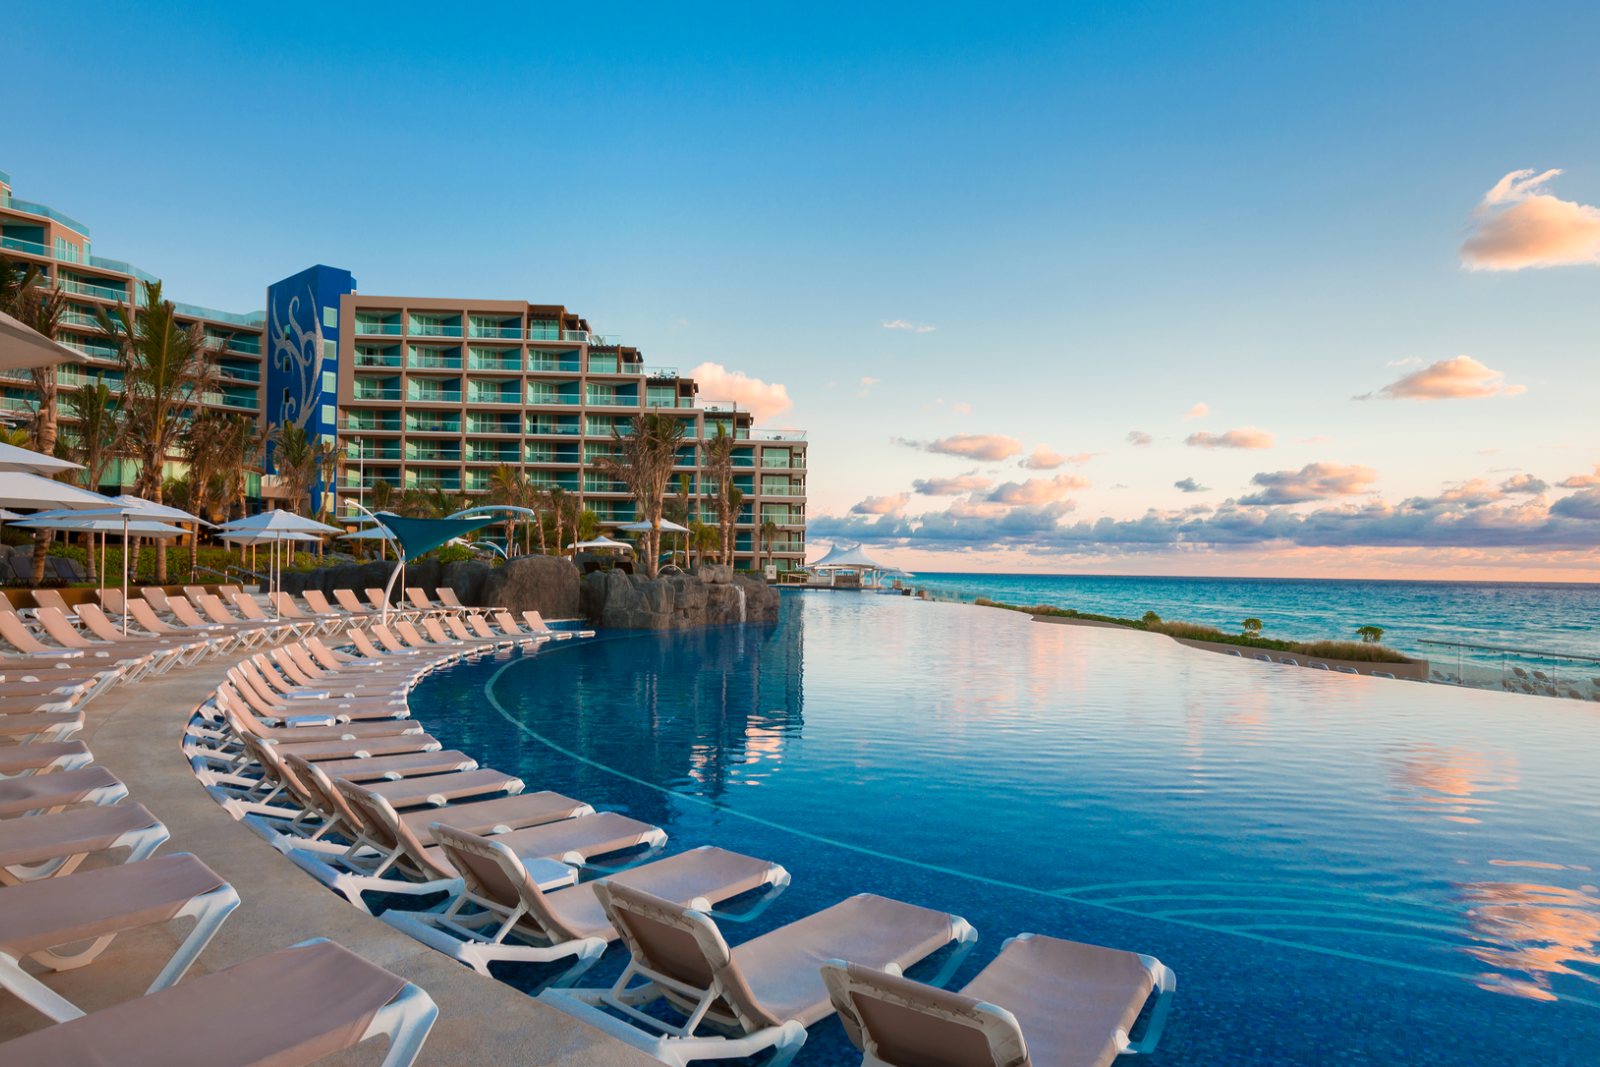 Hard Rock Hotel Cancun picture